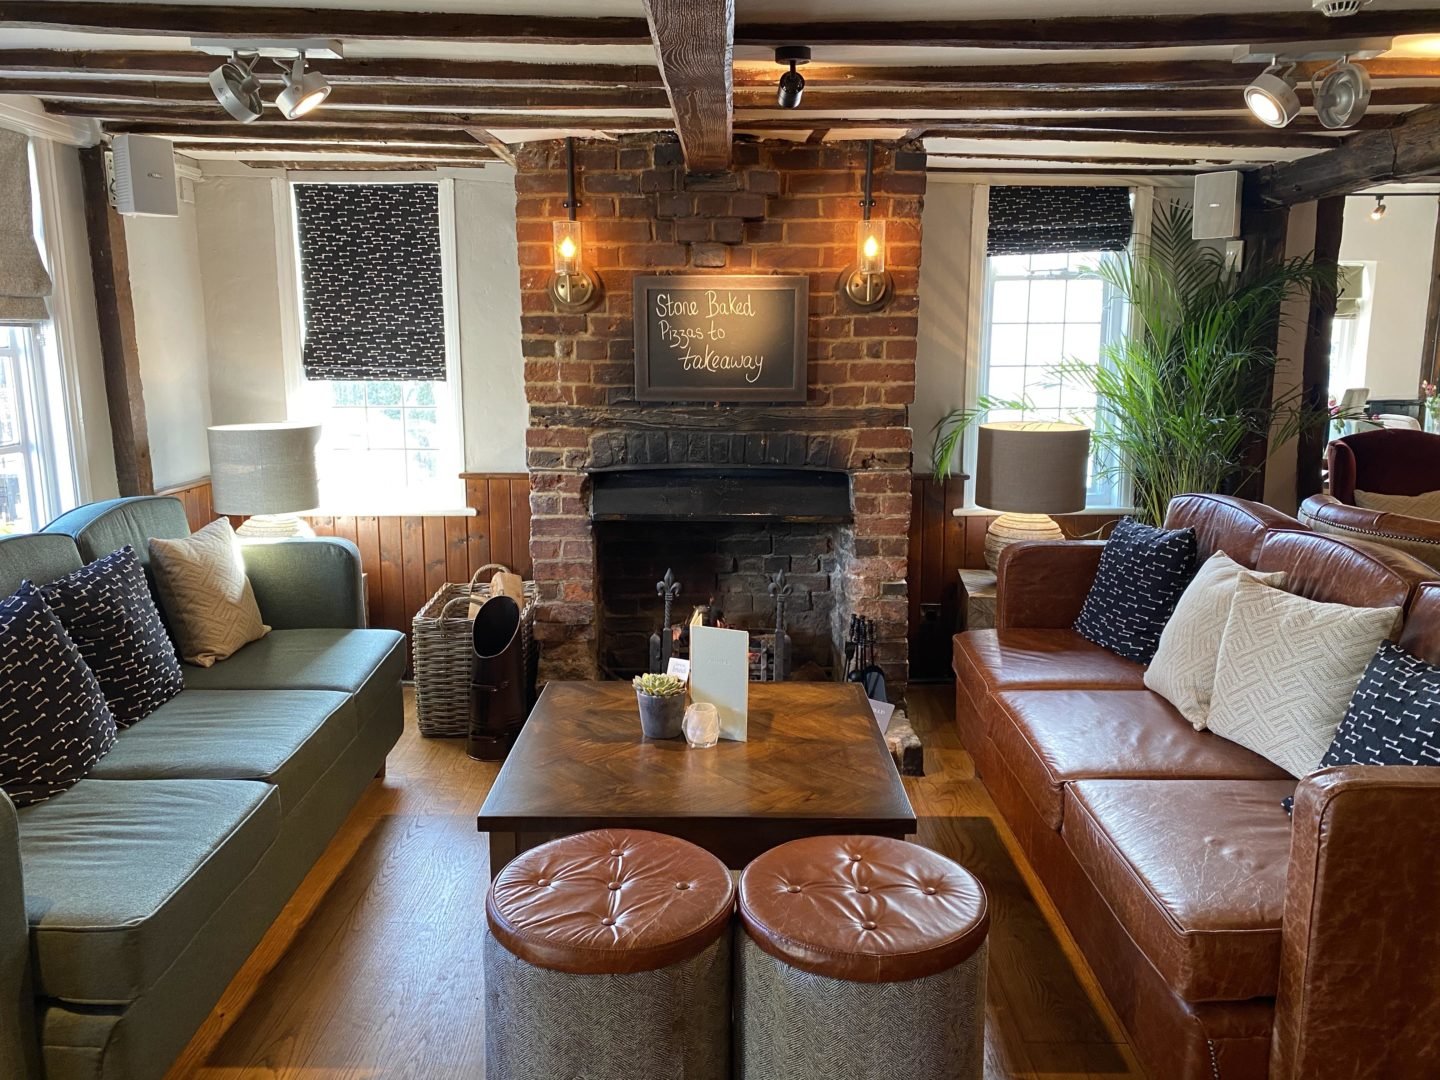 Kings head lounge fireplace in Billericay Essex